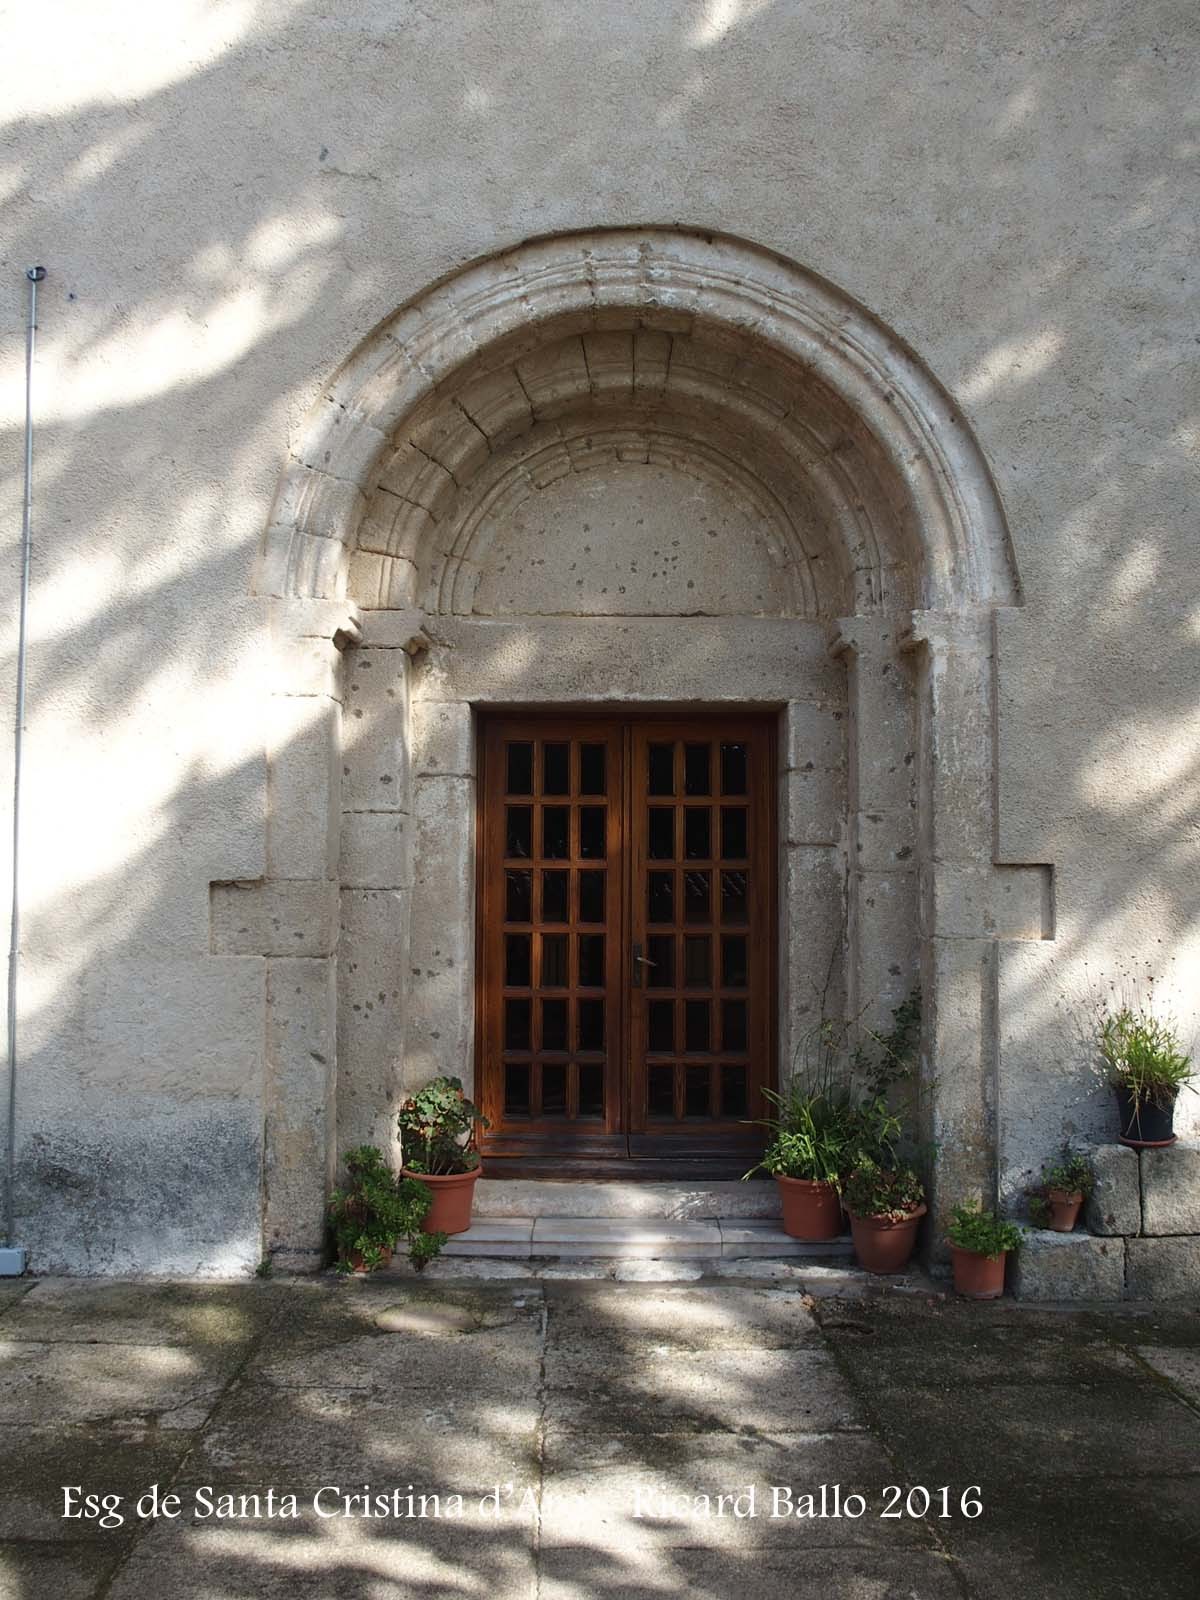 Església de Santa Cristina d’Aro – Santa Cristina d’Aro